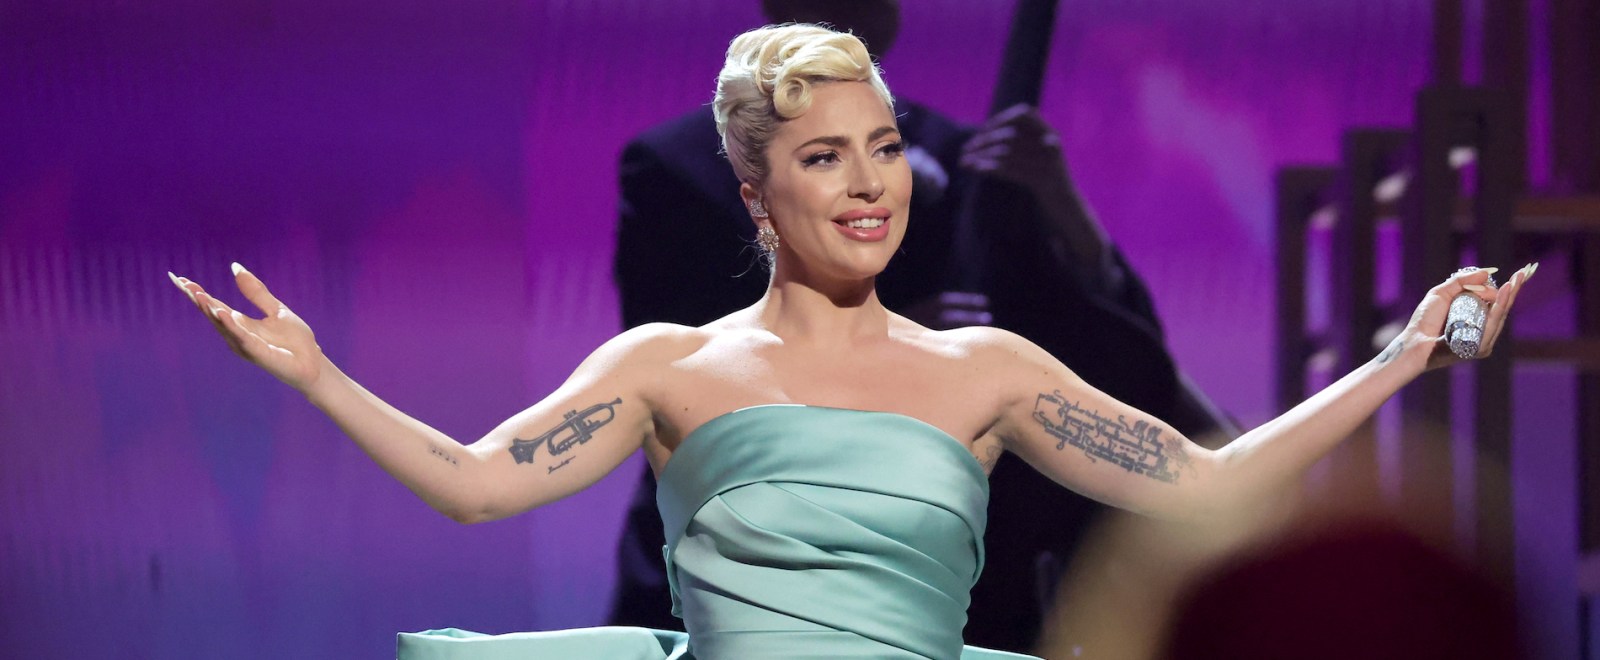 Lady Gaga 64th Annual Grammy Awards 2022